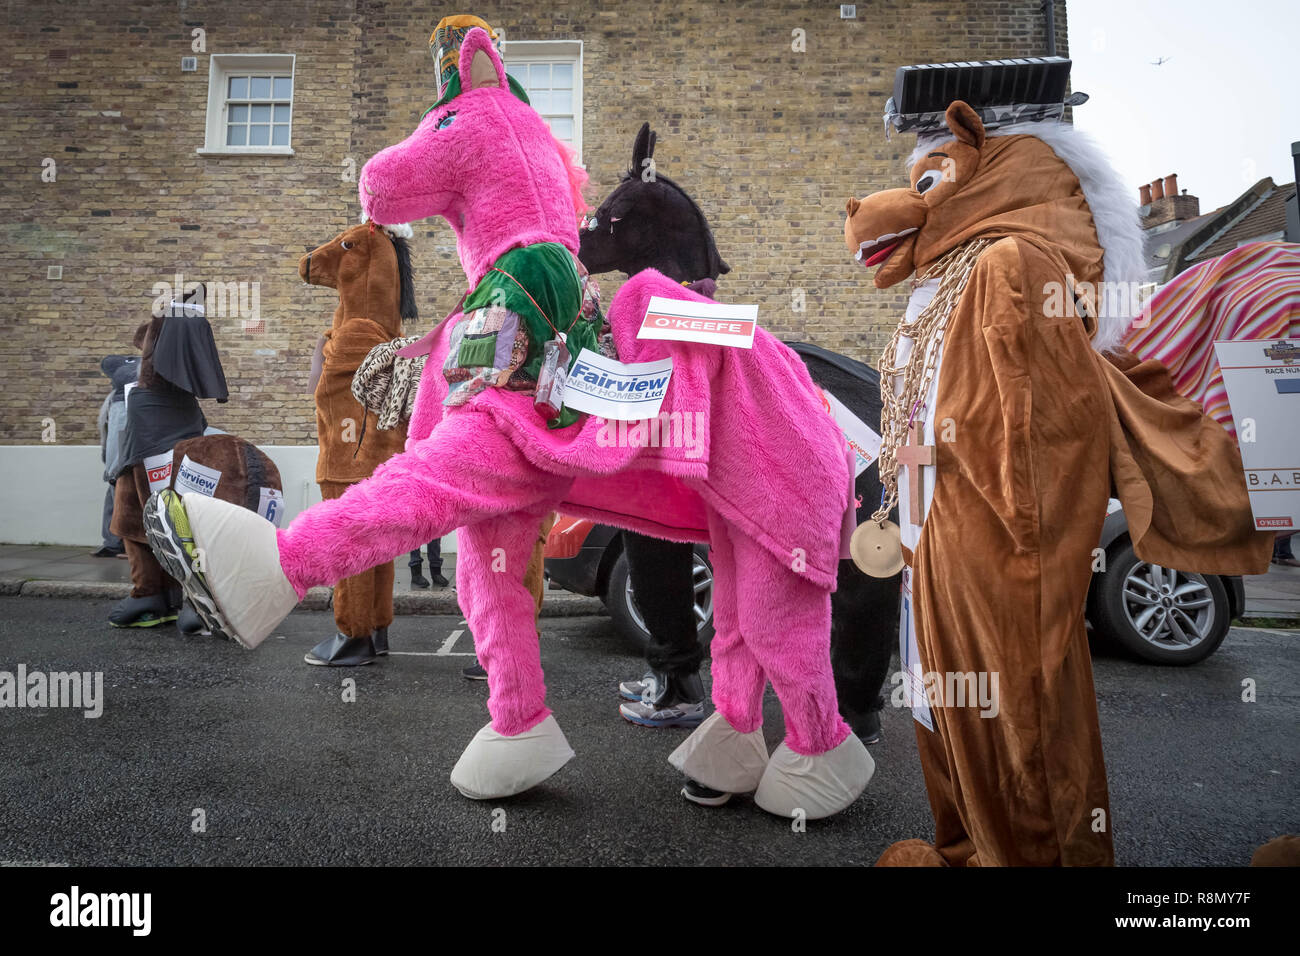 Londres, Royaume-Uni. 14Th Dec 2018. La pantomime de Noël annuel Londres Course de chevaux dans la région de Greenwich. Crédit : Guy Josse/Alamy Live News Banque D'Images